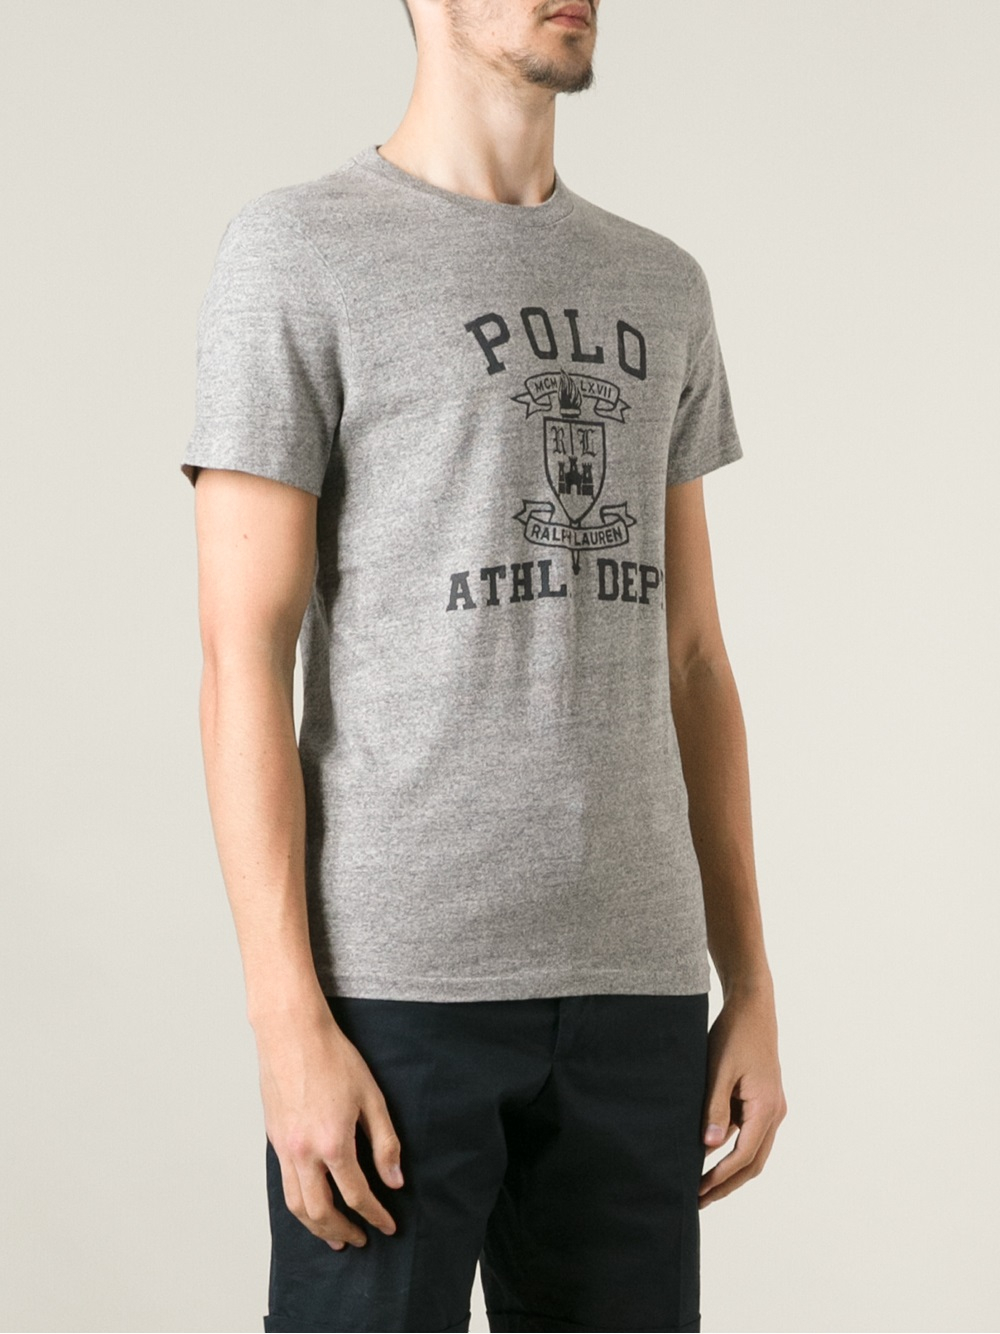 Polo ralph lauren t shirt print money down cheap Red Bluff | best ...